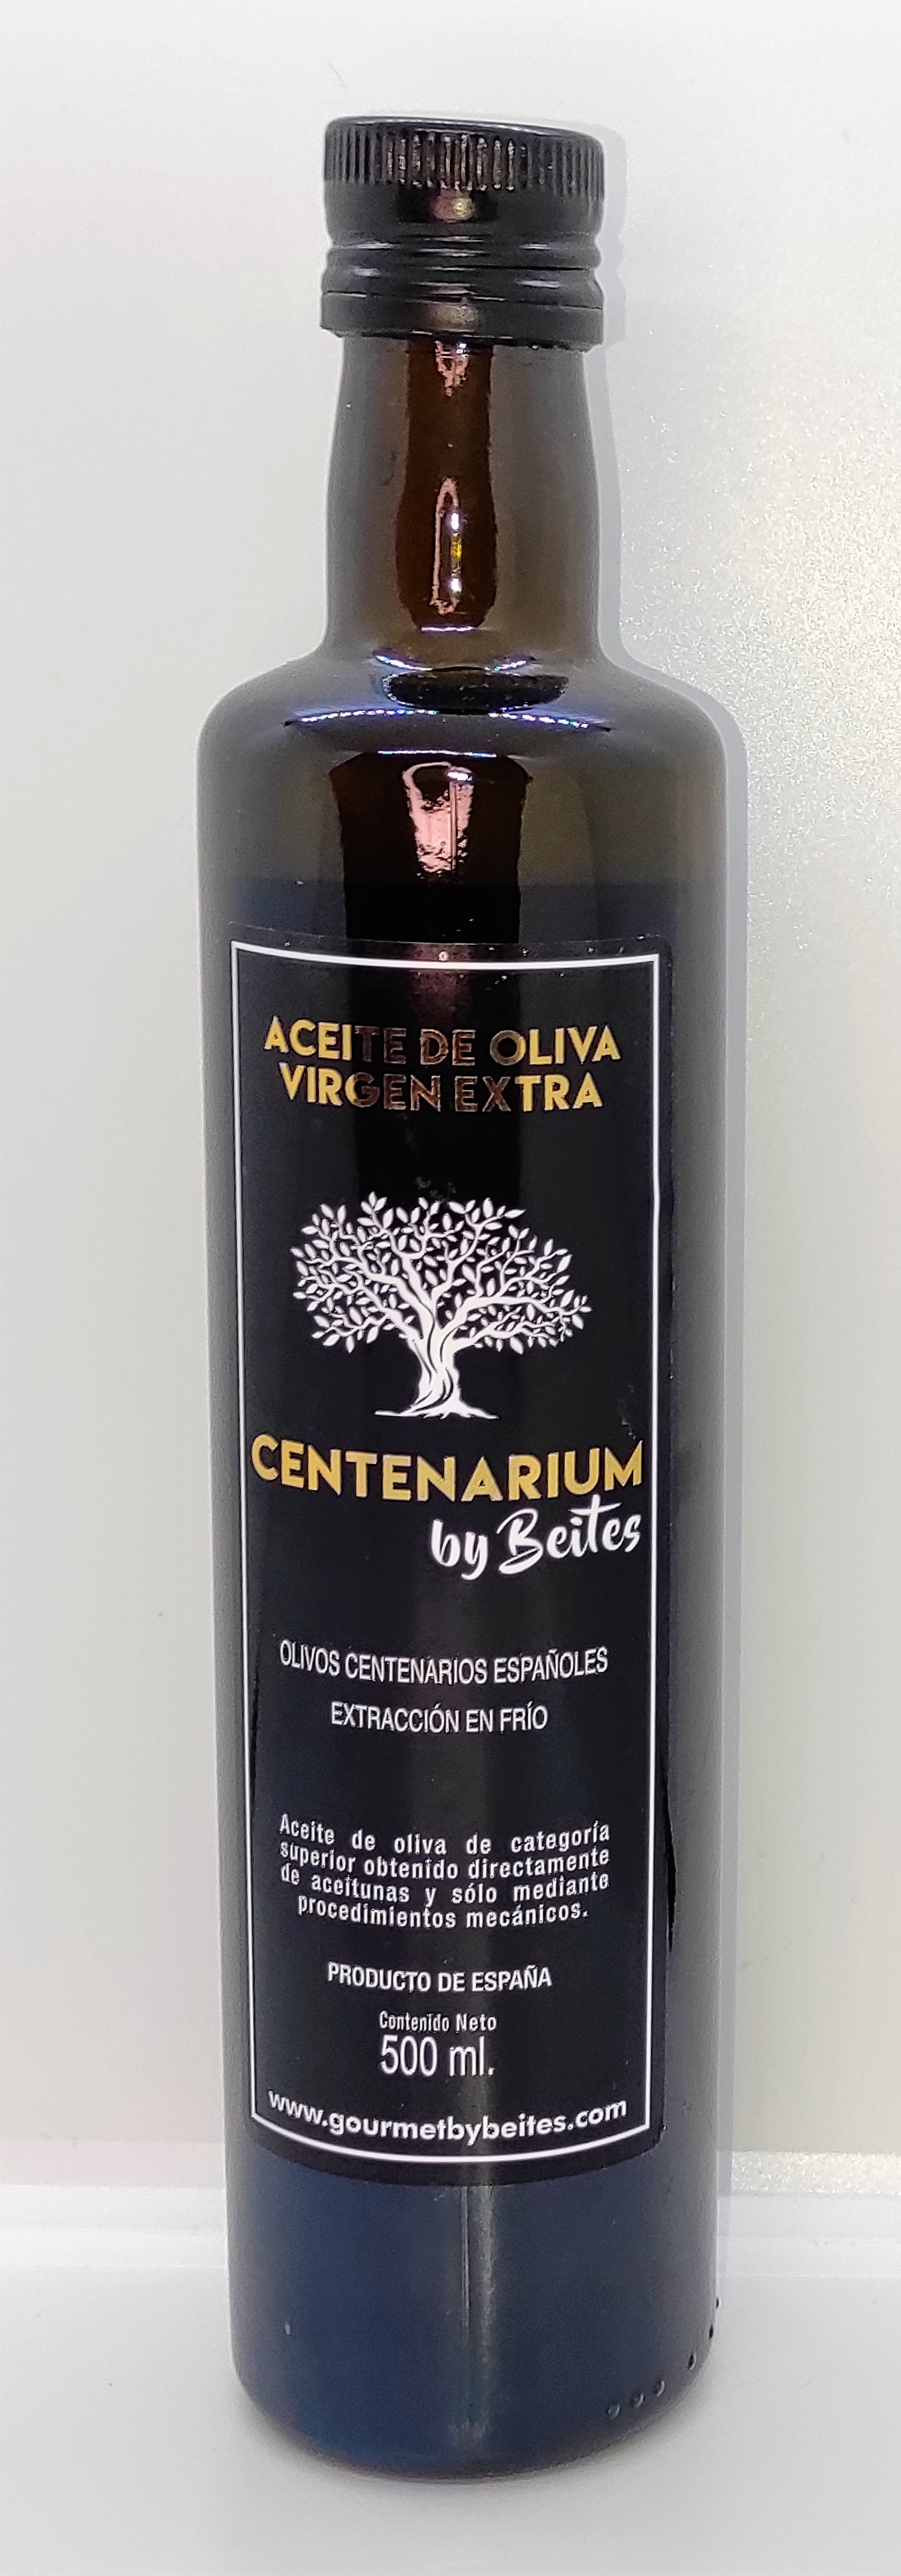 Centenarium by Beites botella